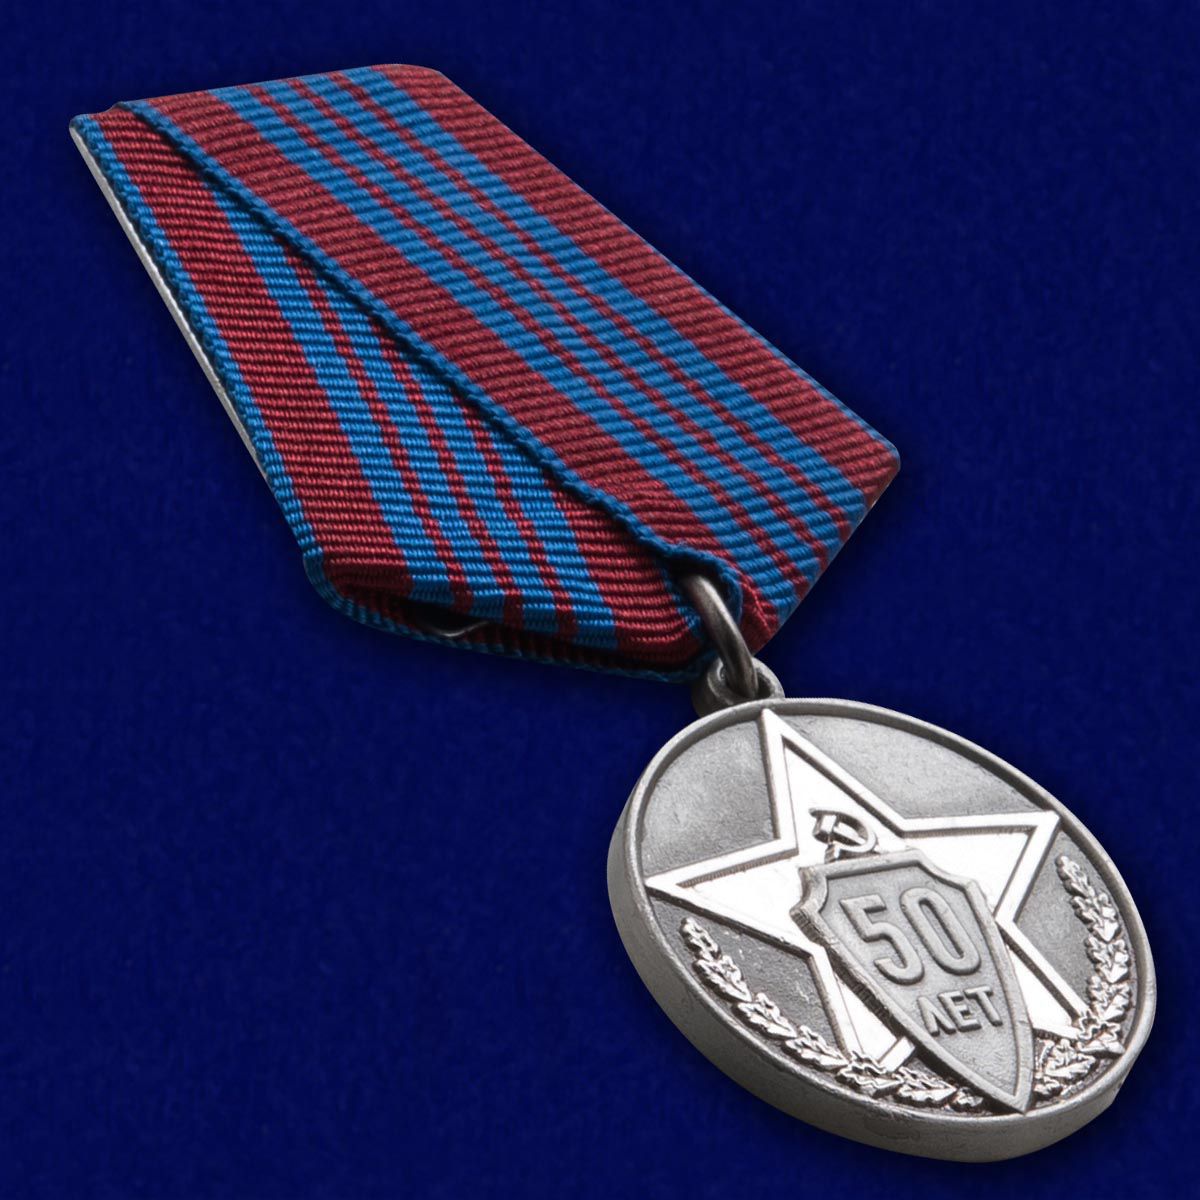 Медаль "Советской милиции 50 лет" в презентабельном футляре из флока  